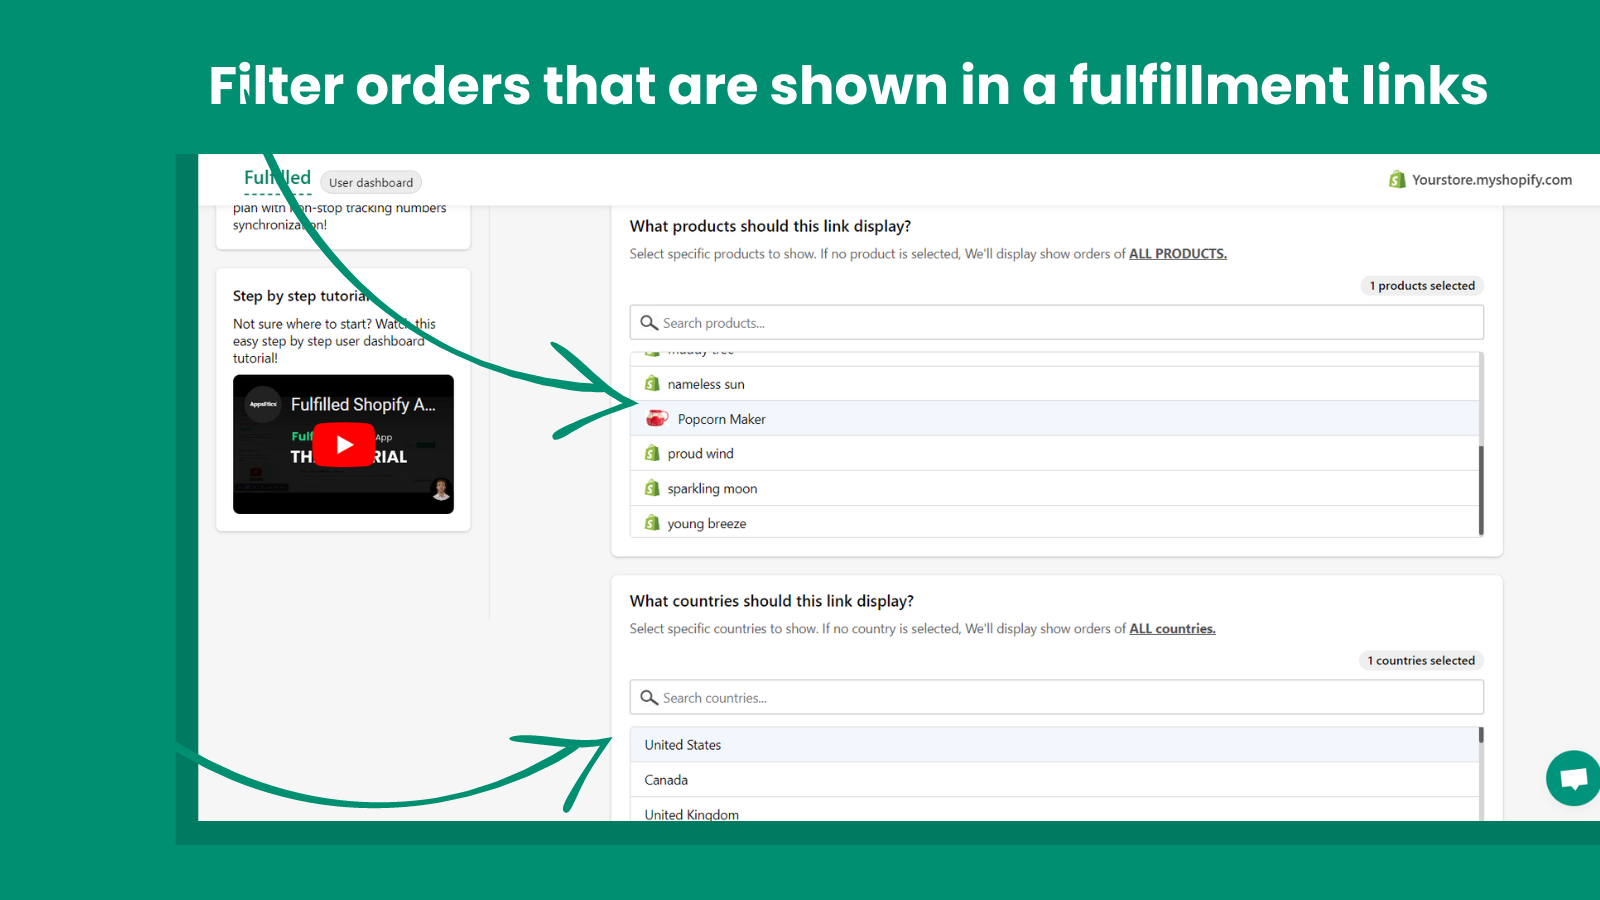 Use filtros para permitir que os fornecedores vejam os pedidos que você deseja que eles vejam!